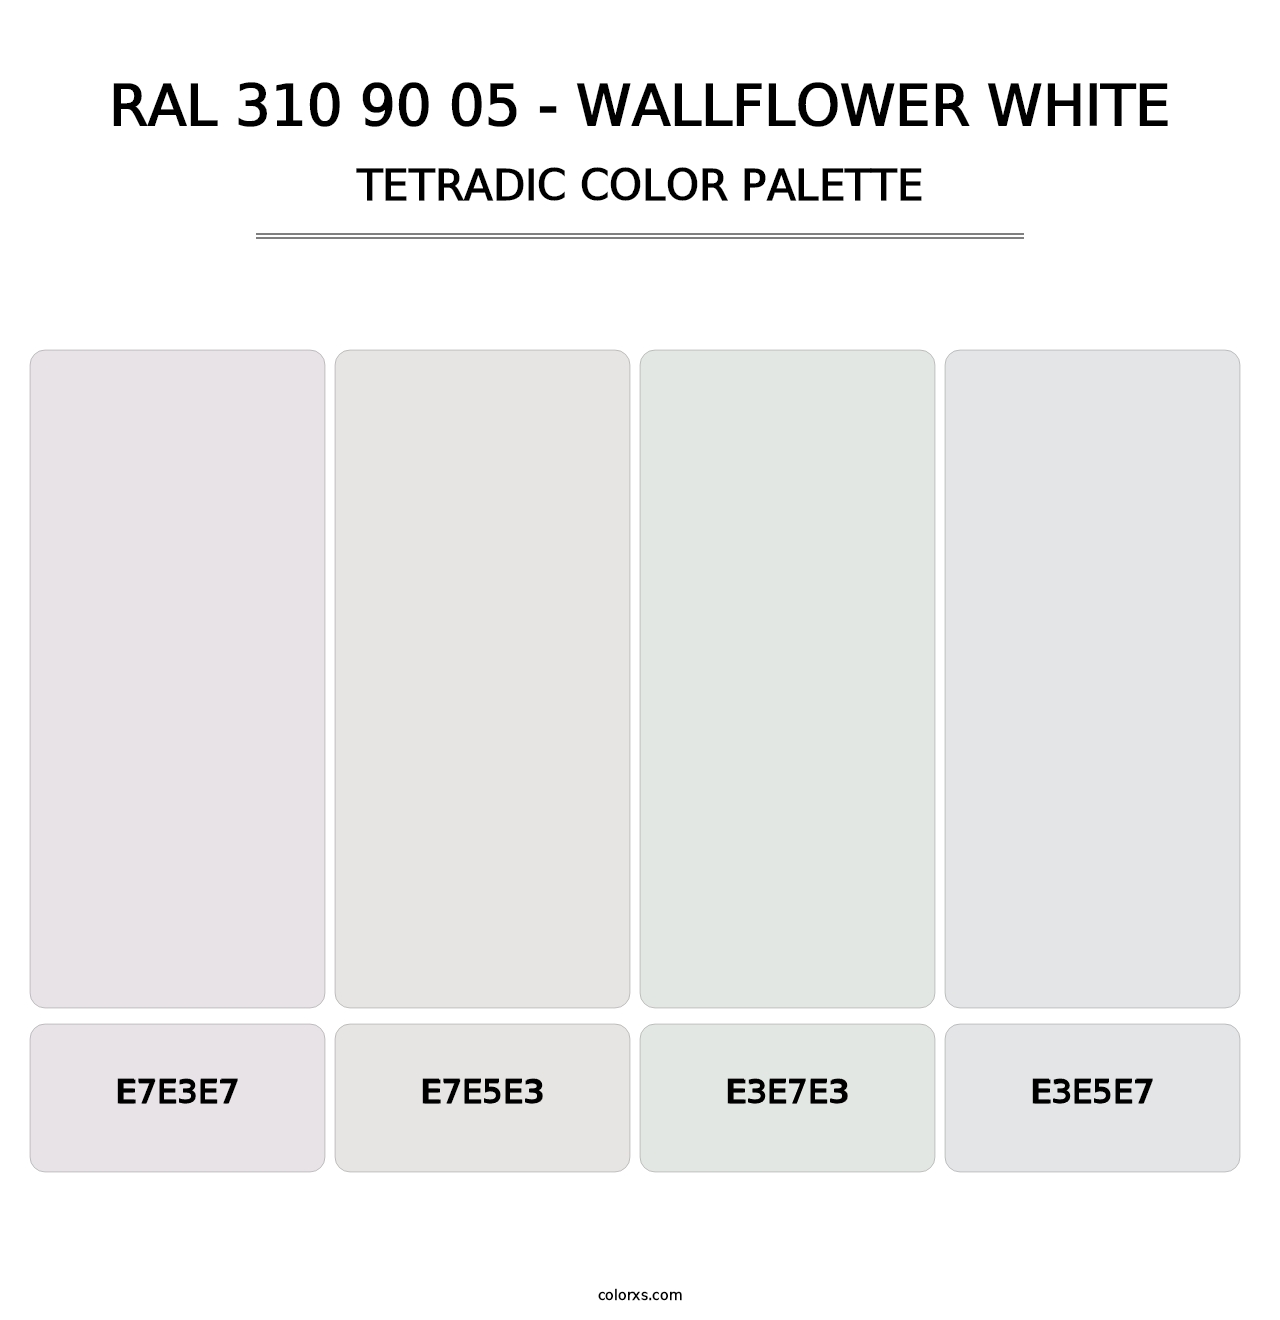 RAL 310 90 05 - Wallflower White - Tetradic Color Palette